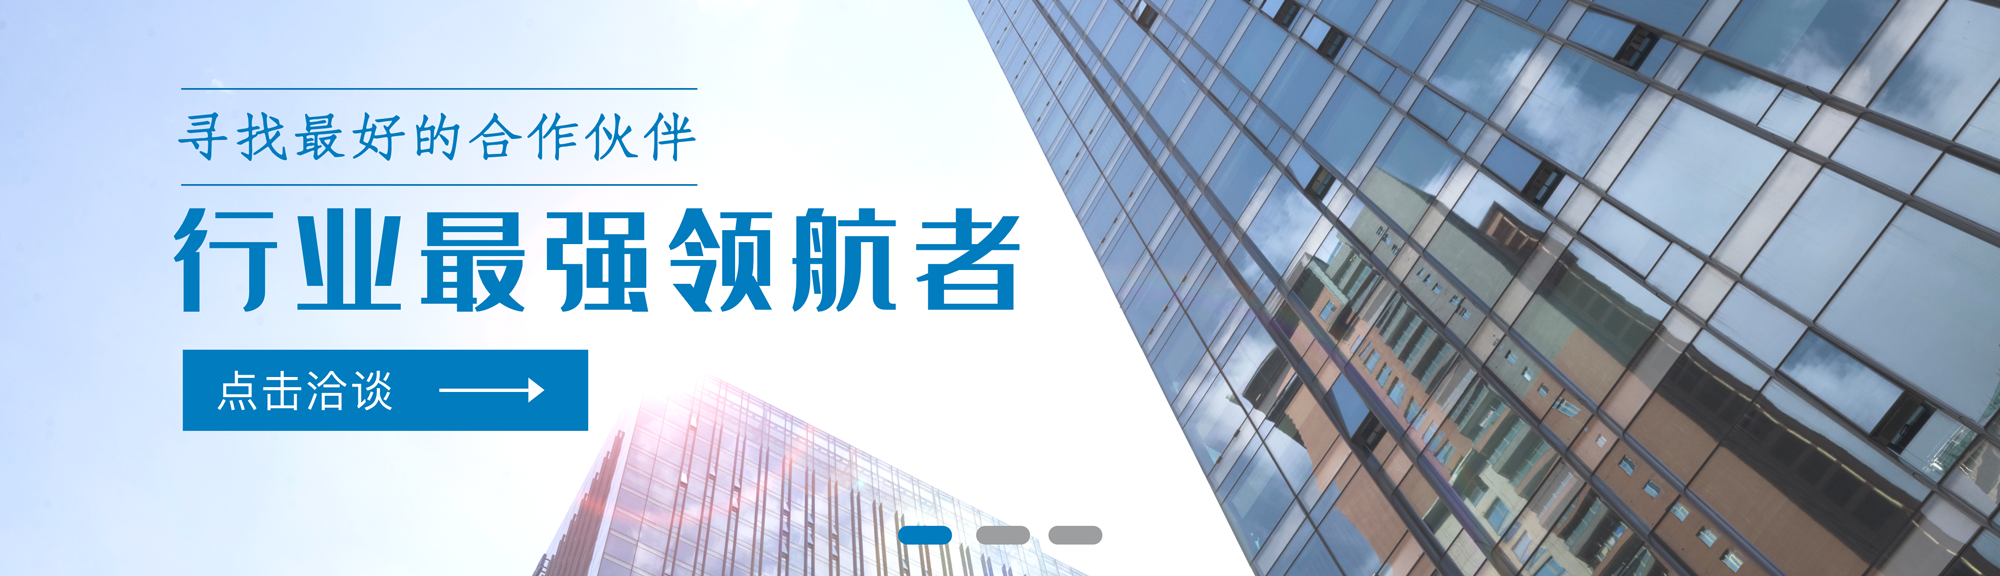 公司理念二 - 广州静距离环保科技有限公司